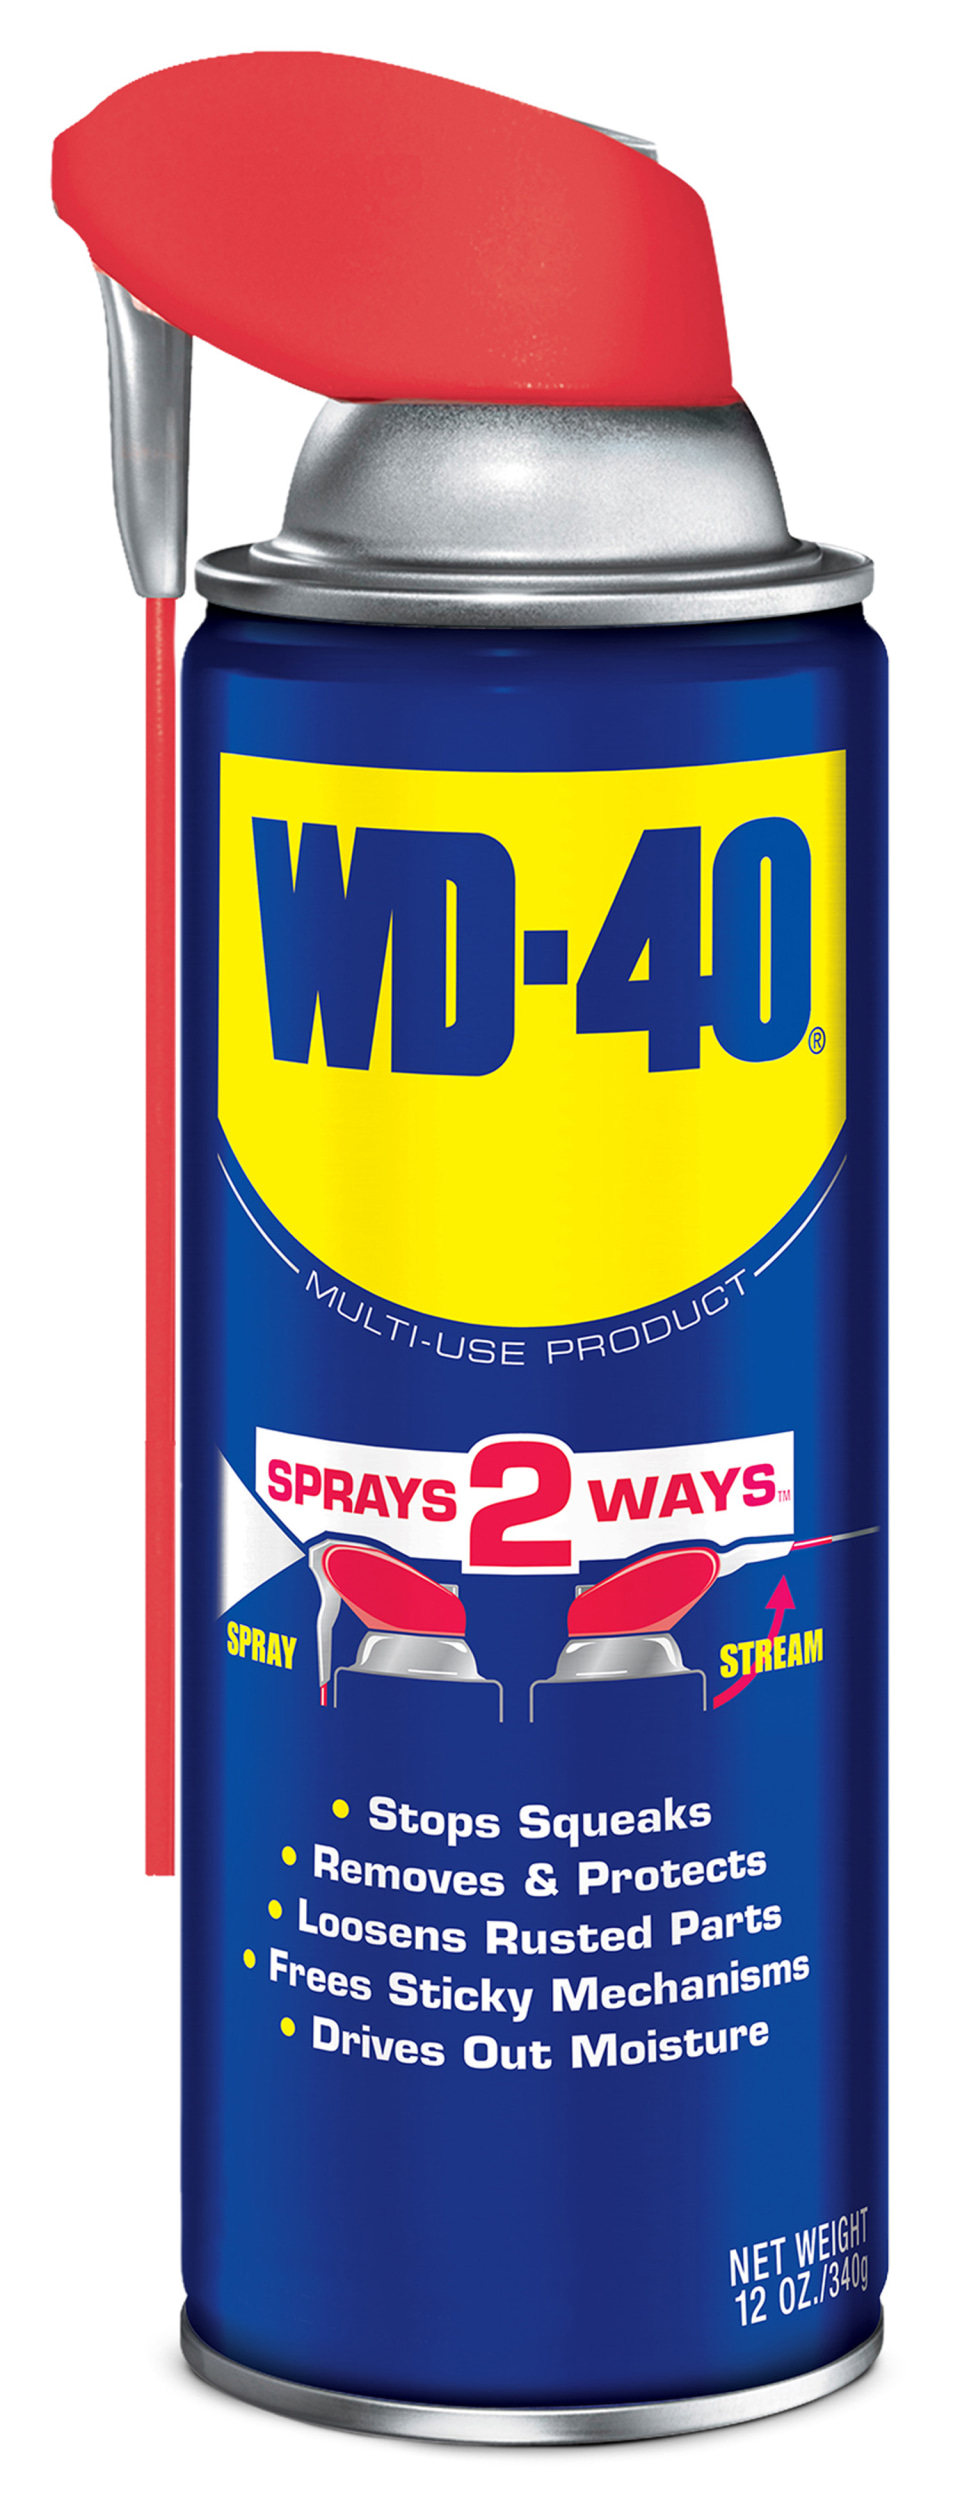 WD40 Multi-oil WD-40 5 l